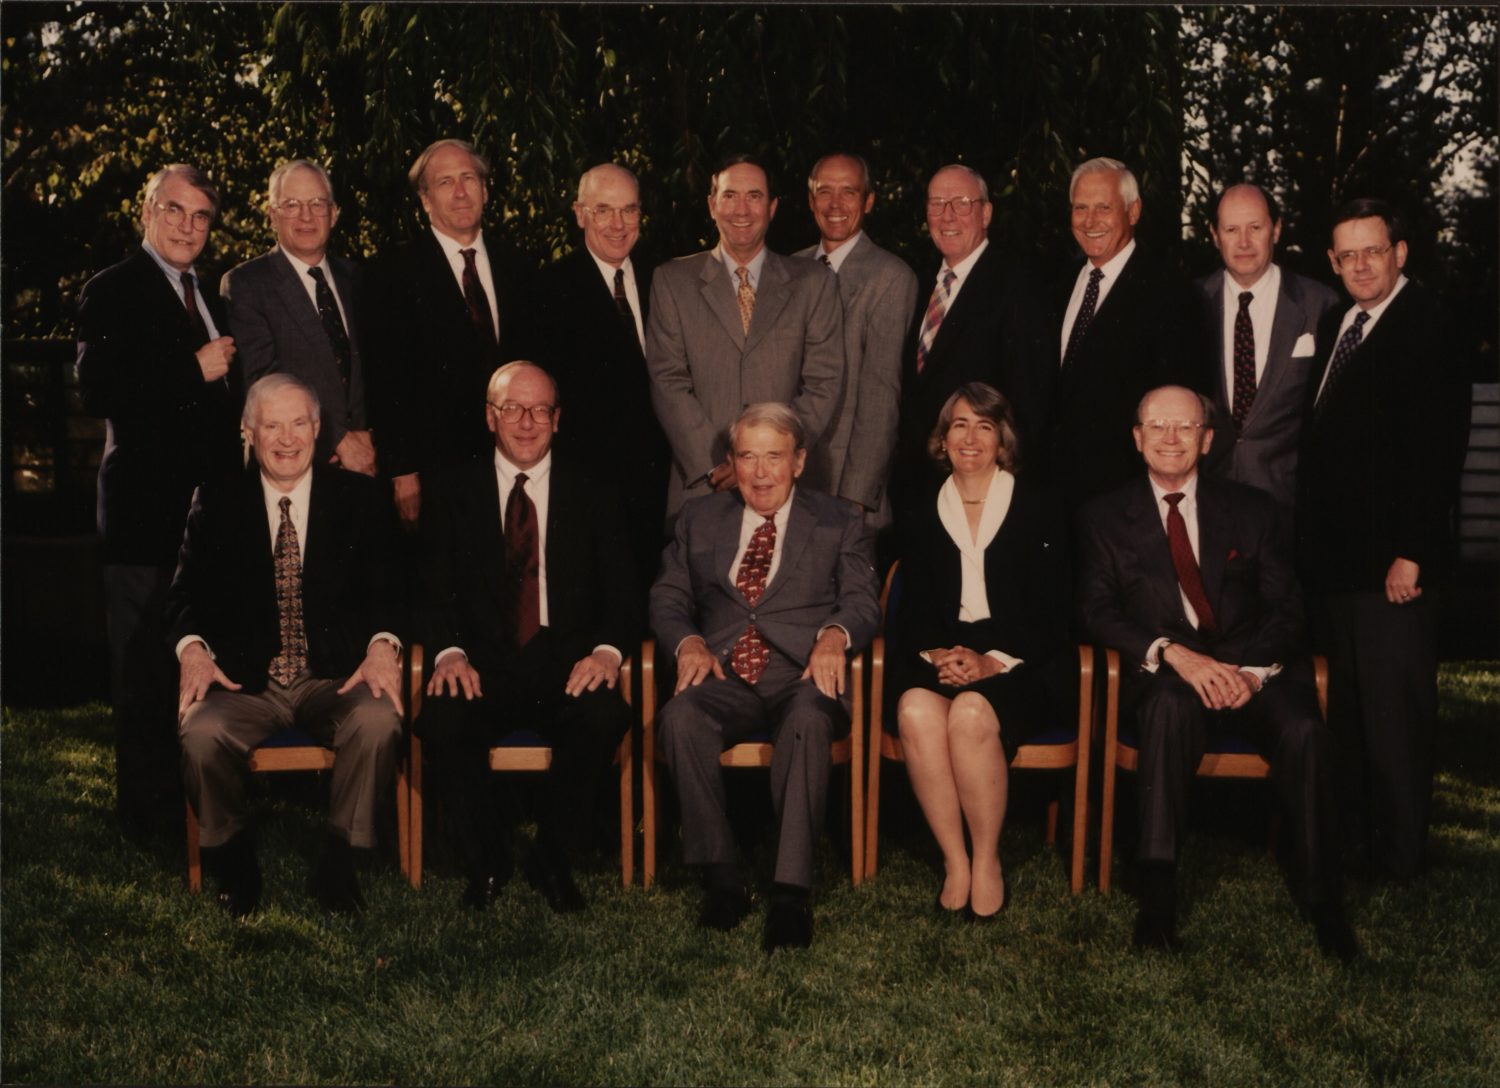 A portrait of the Hewlett-Packard board of directors in 1996.